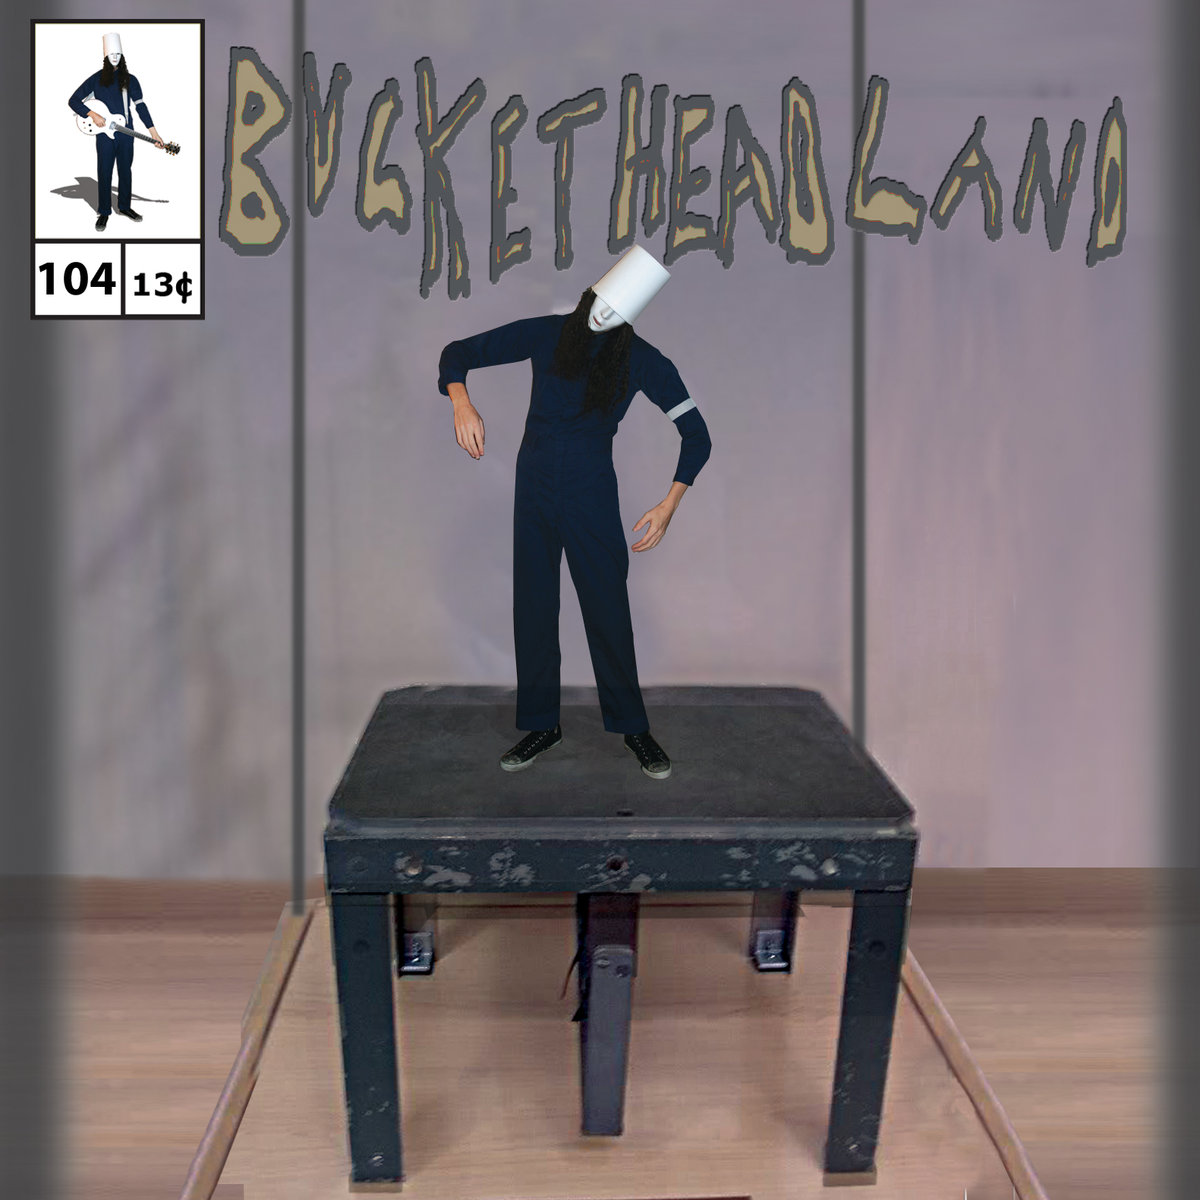 Buckethead - Pike 104: Project Little Man (2015)